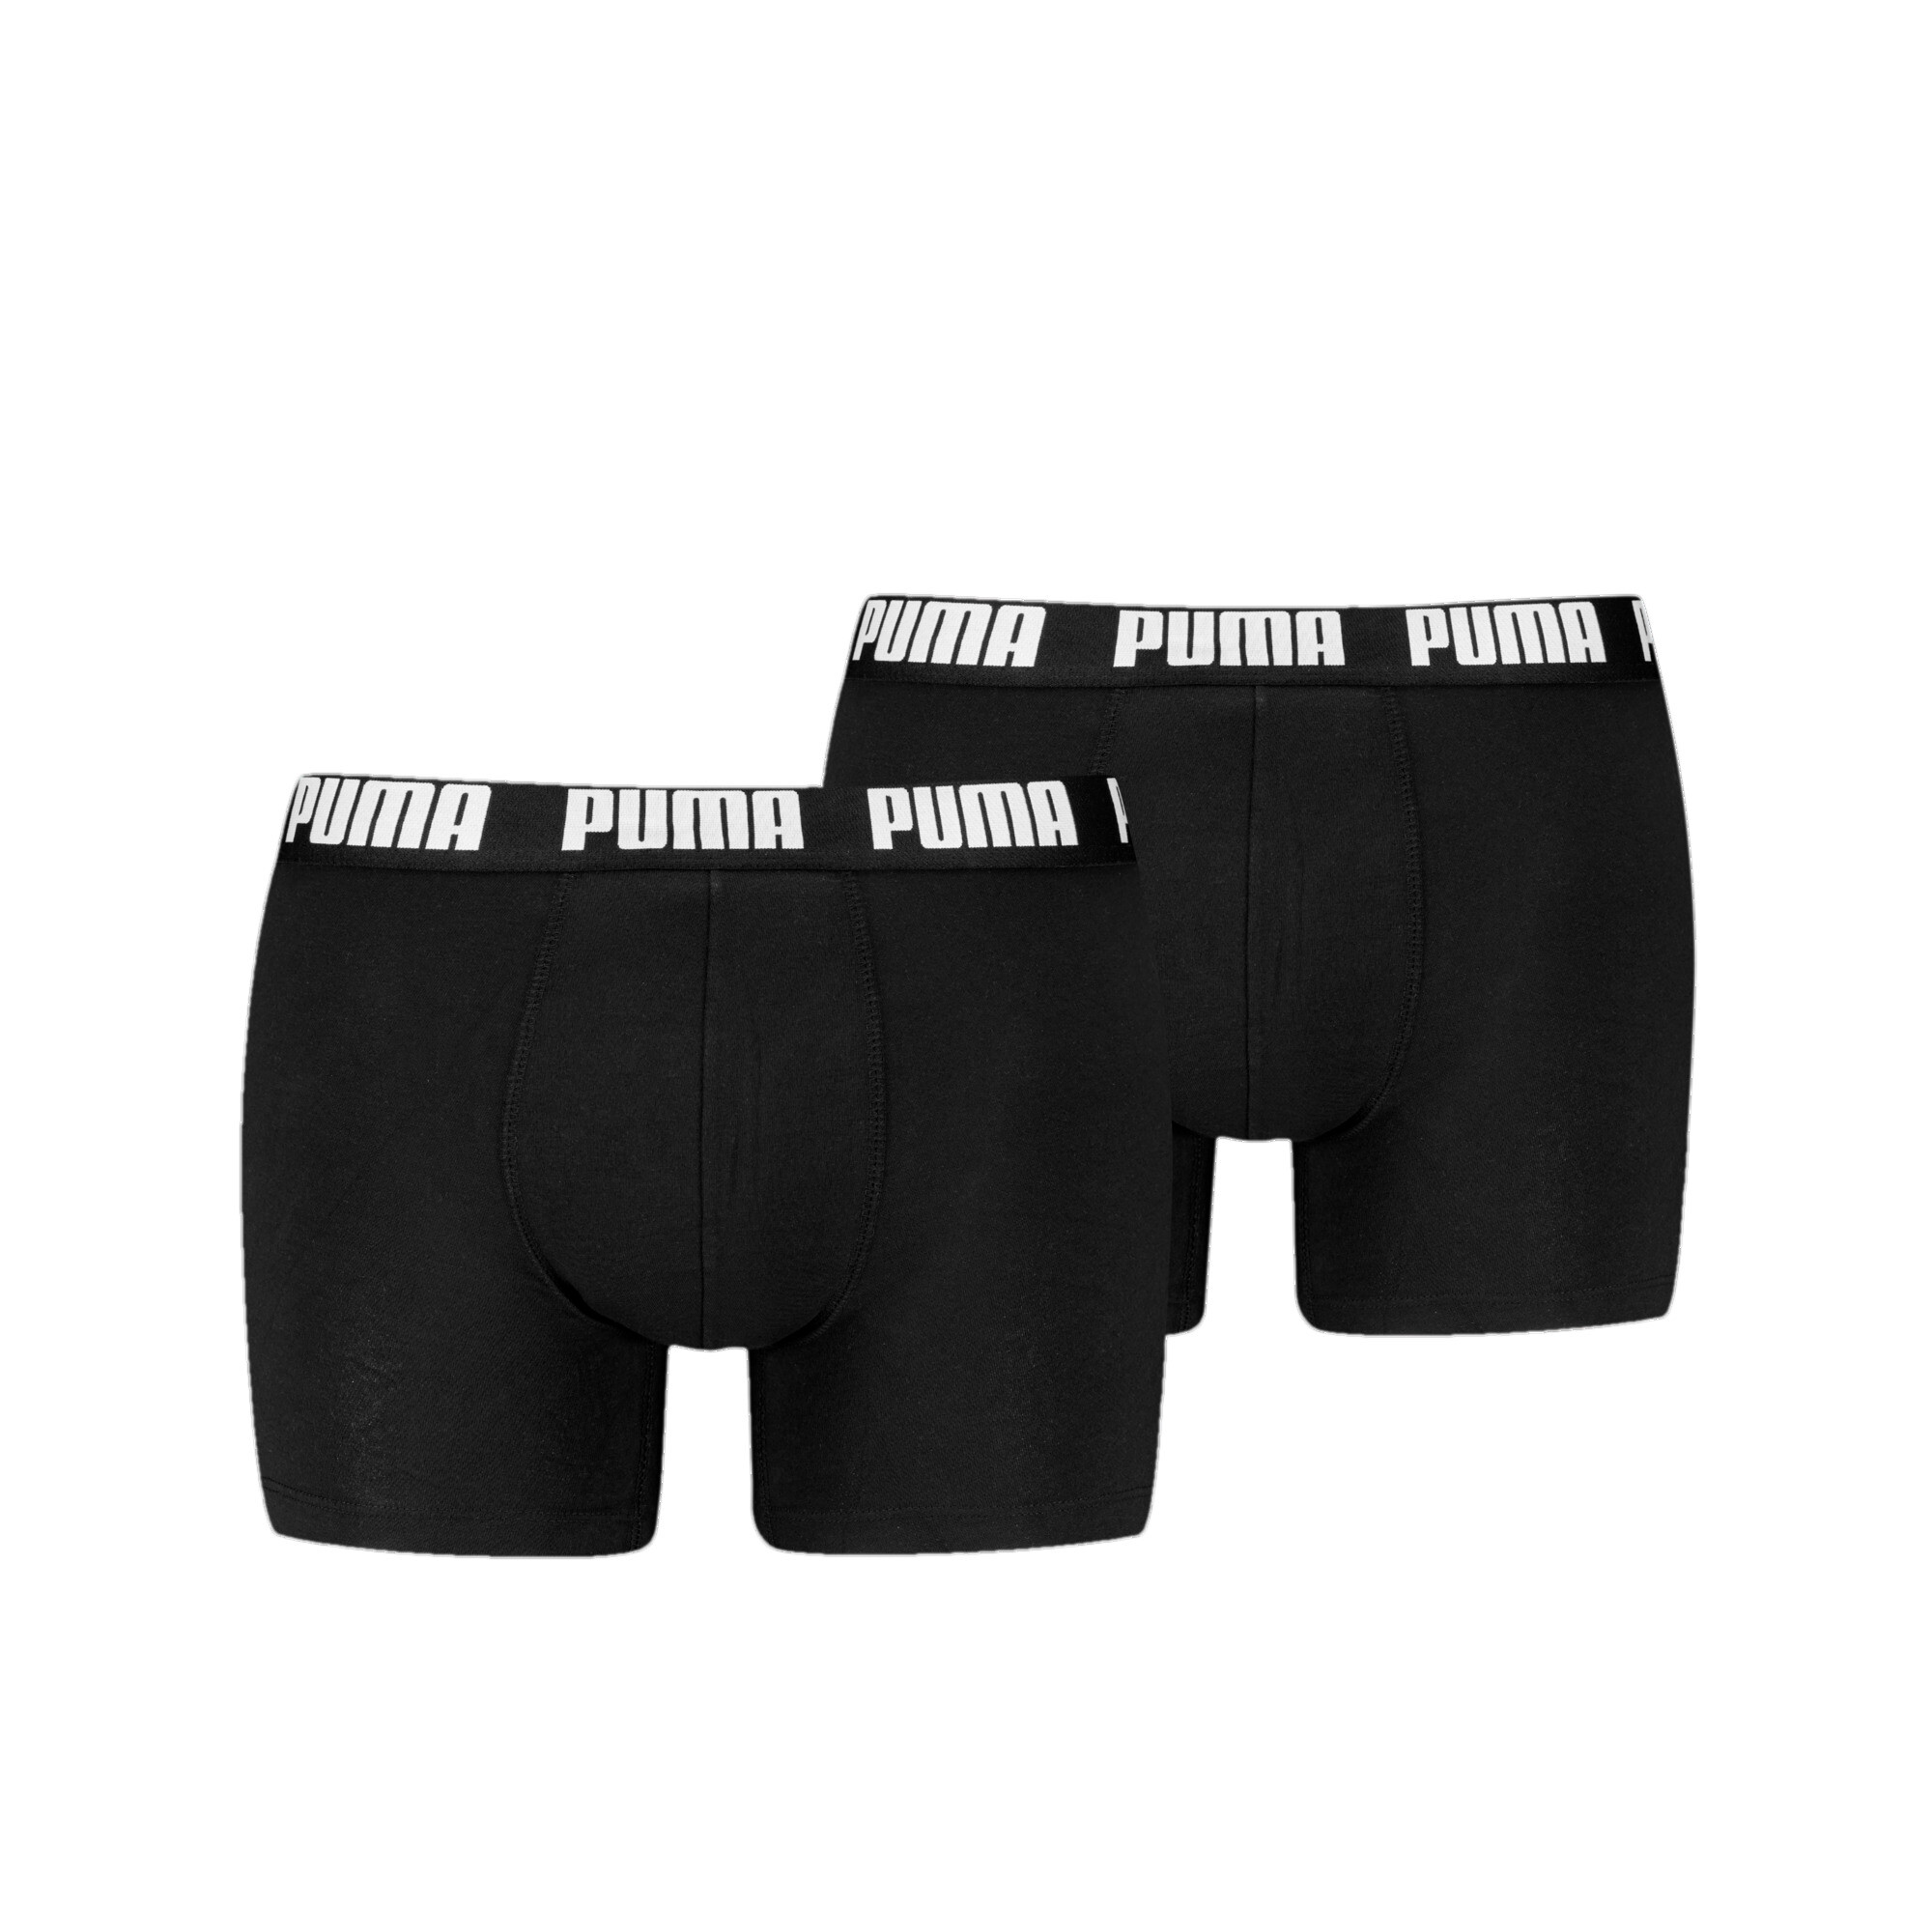 Men's Puma's Boxer Briefs 2 Pack, Black, Size 4, Clothing